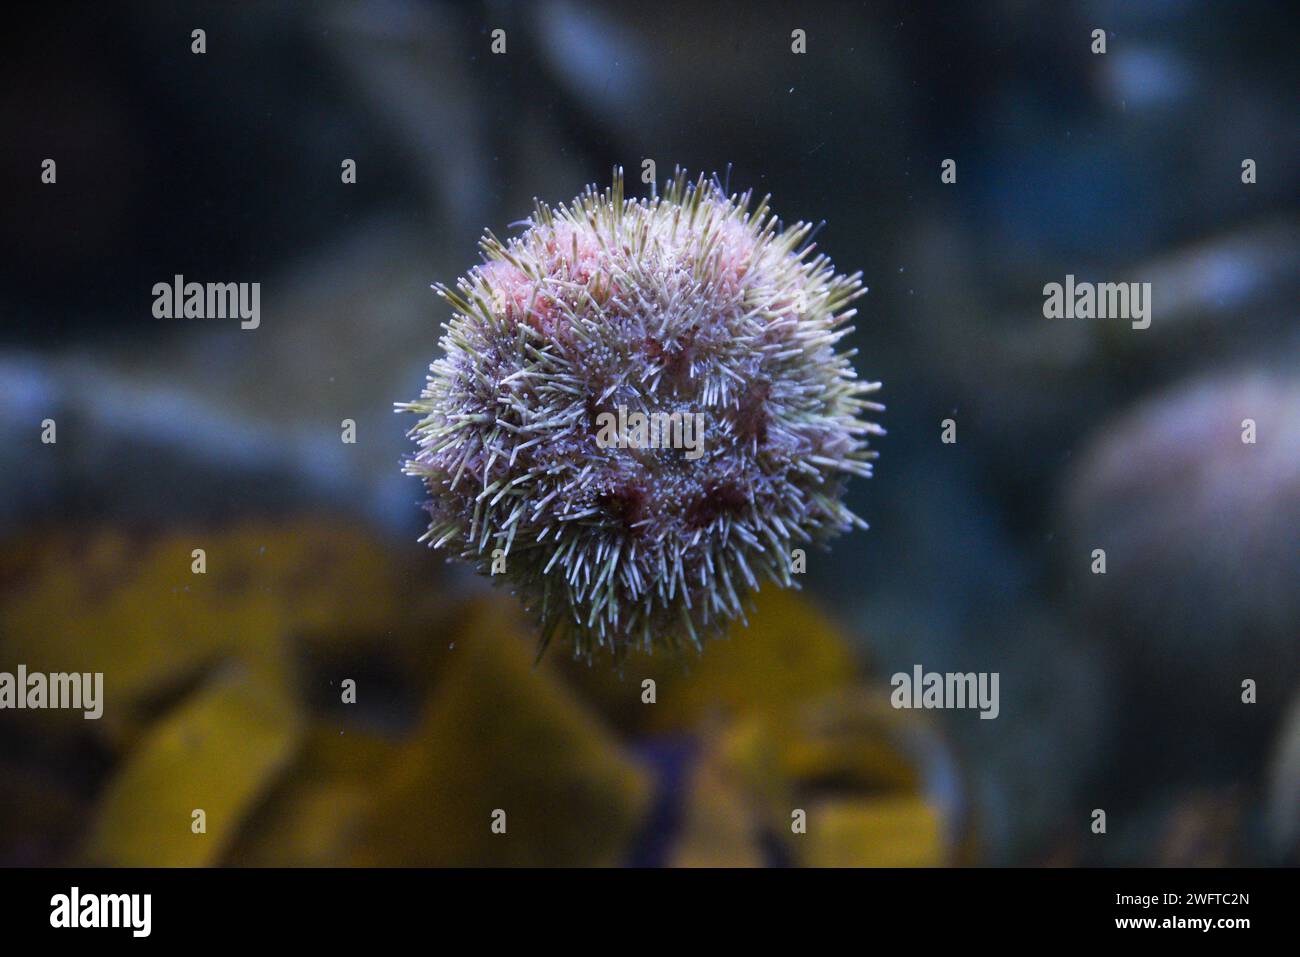 Sea urchin swimming in the aquarium, beautiful sea urchin in the water. Stock Photo